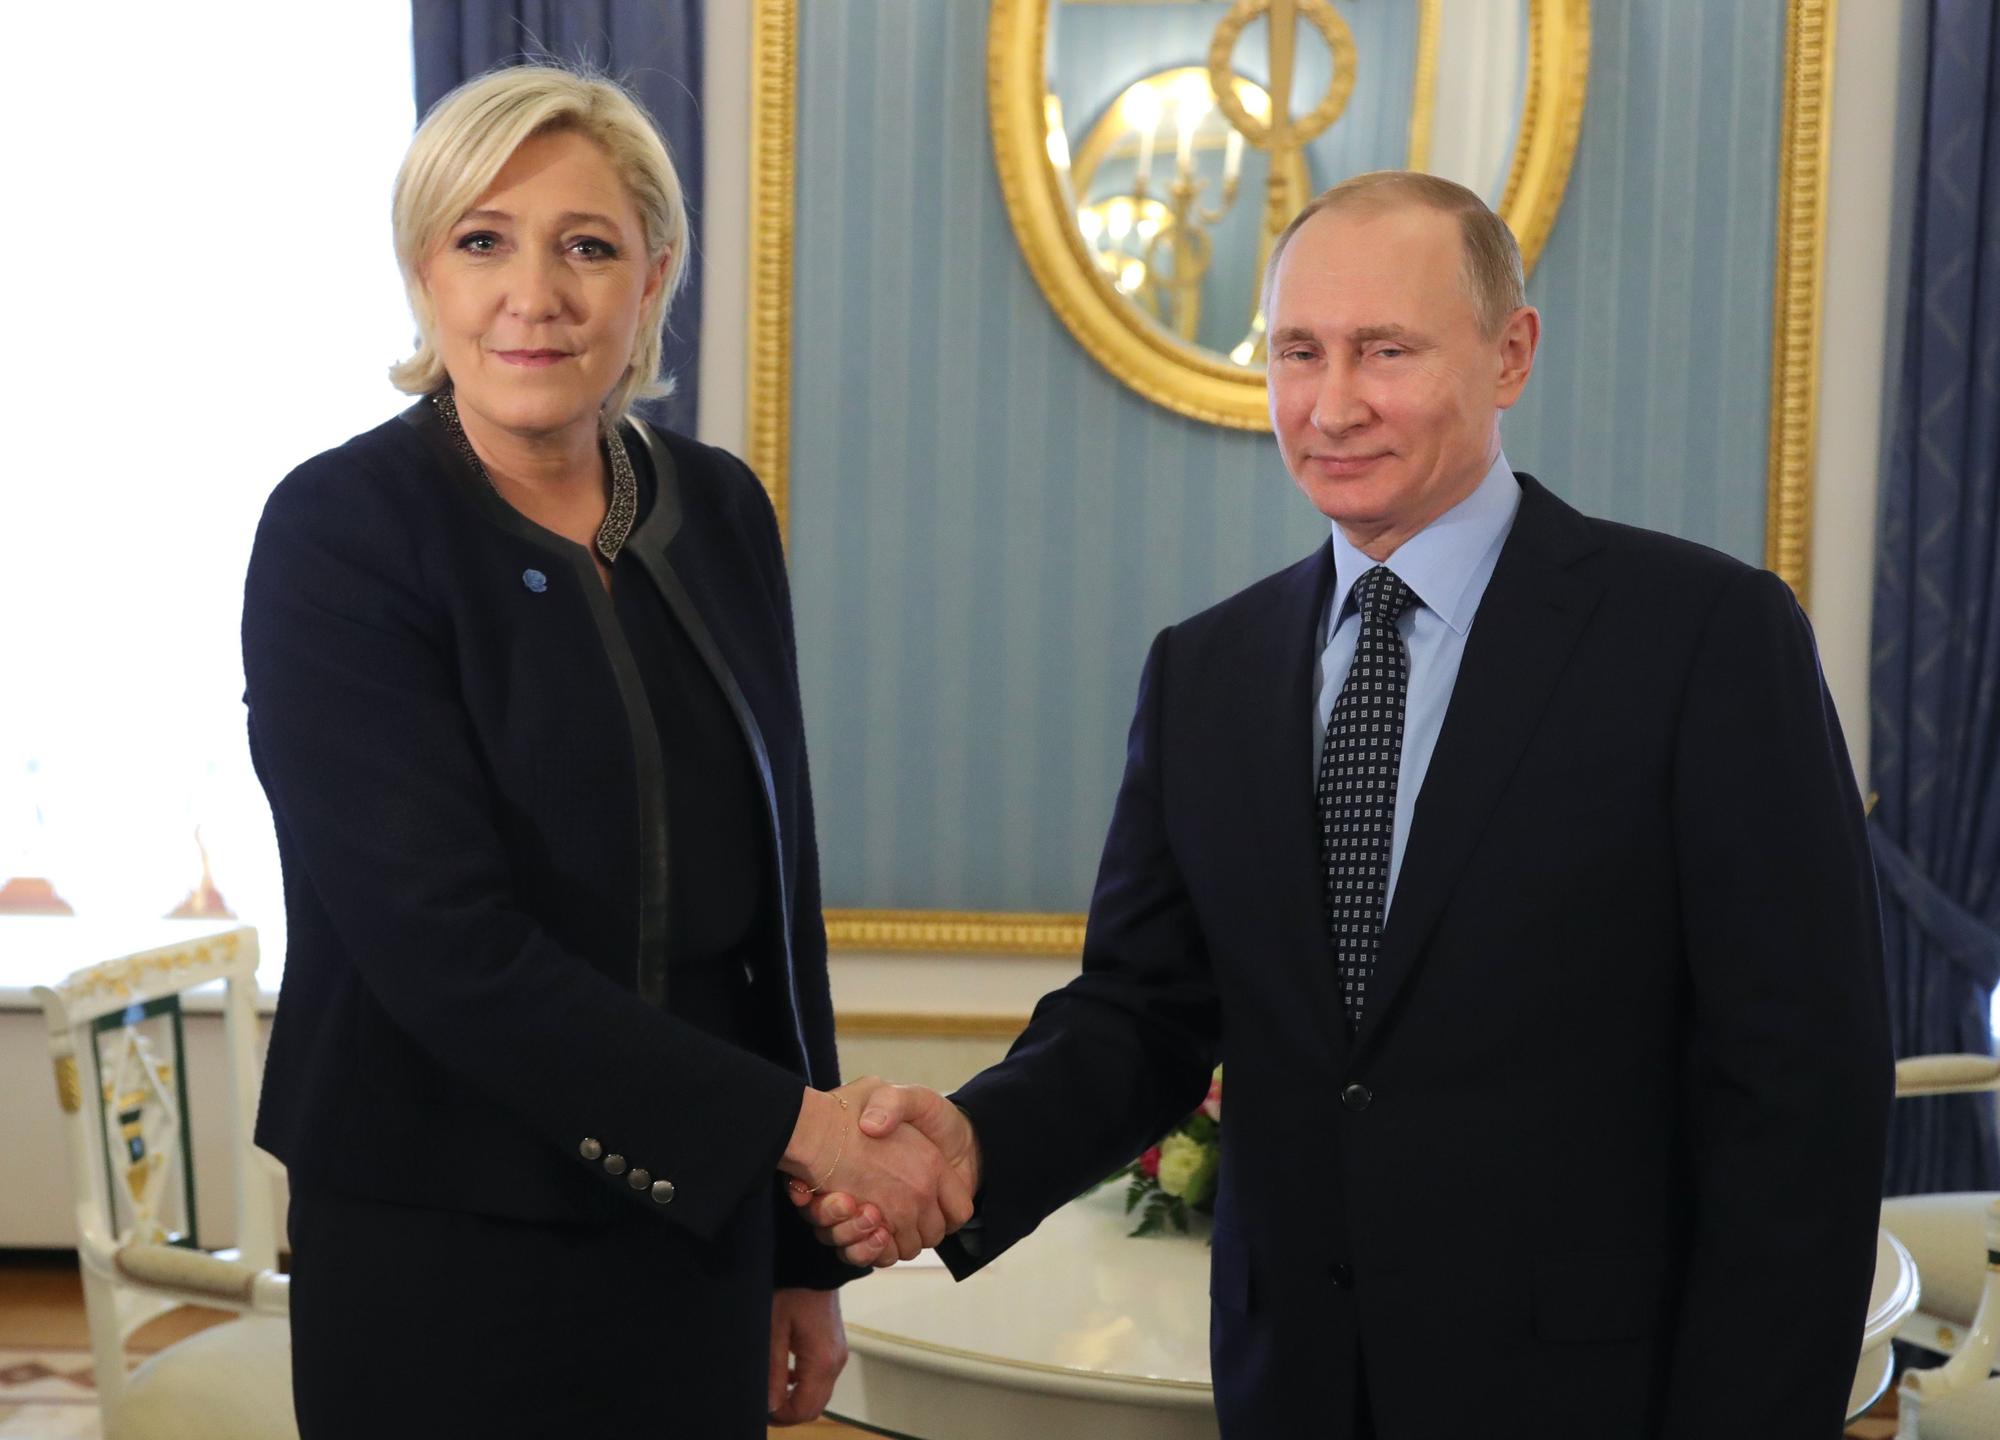 Le Pen con Putin en 2017